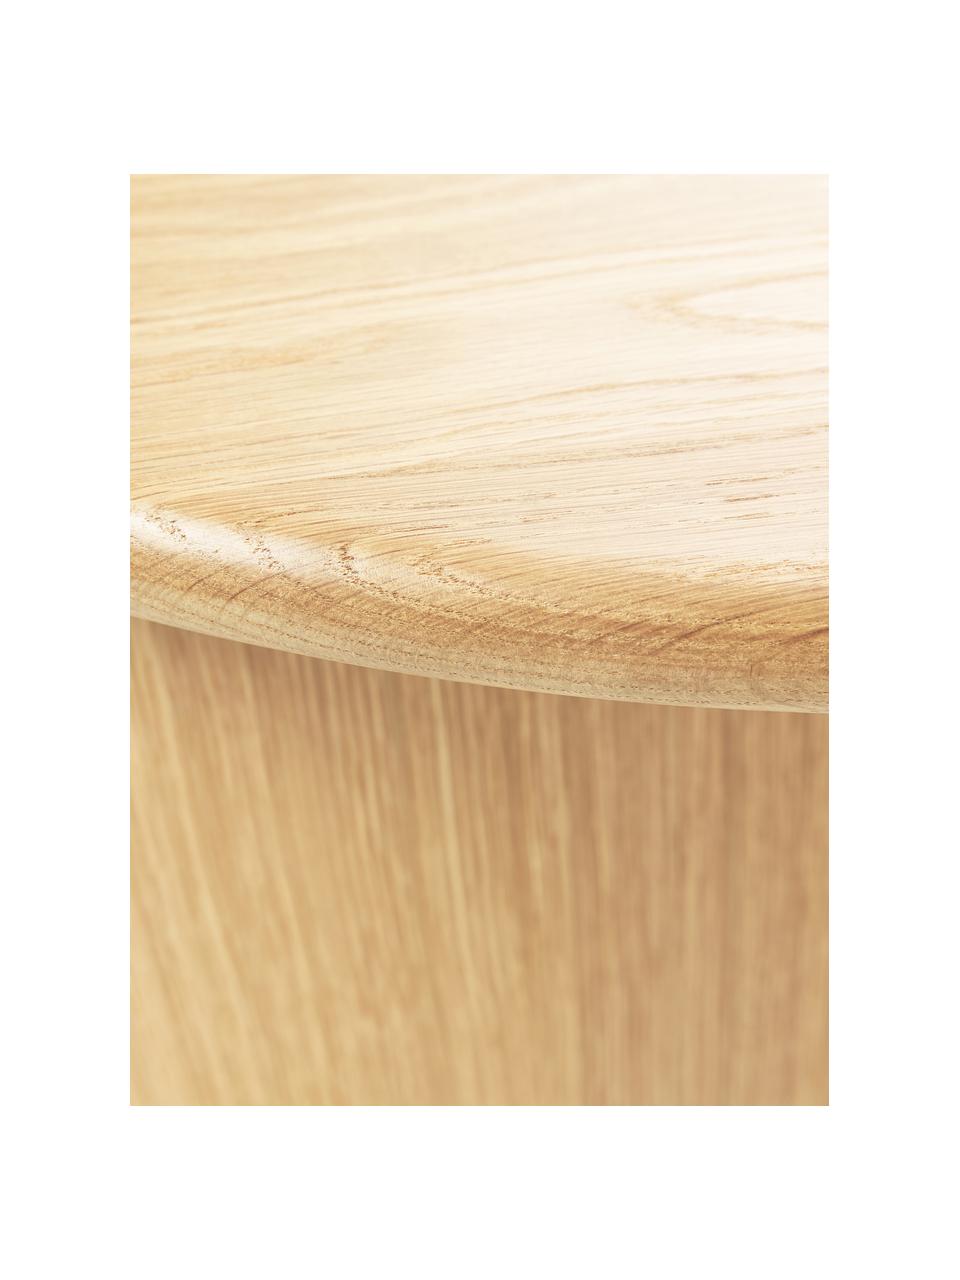 Table basse ovale en chêne Didi, Bois de chêne huilé

Ce produit est fabriqué à partir de bois certifié FSC® issu d'une exploitation durable, Bois de chêne, larg. 140 x prof. 70 cm